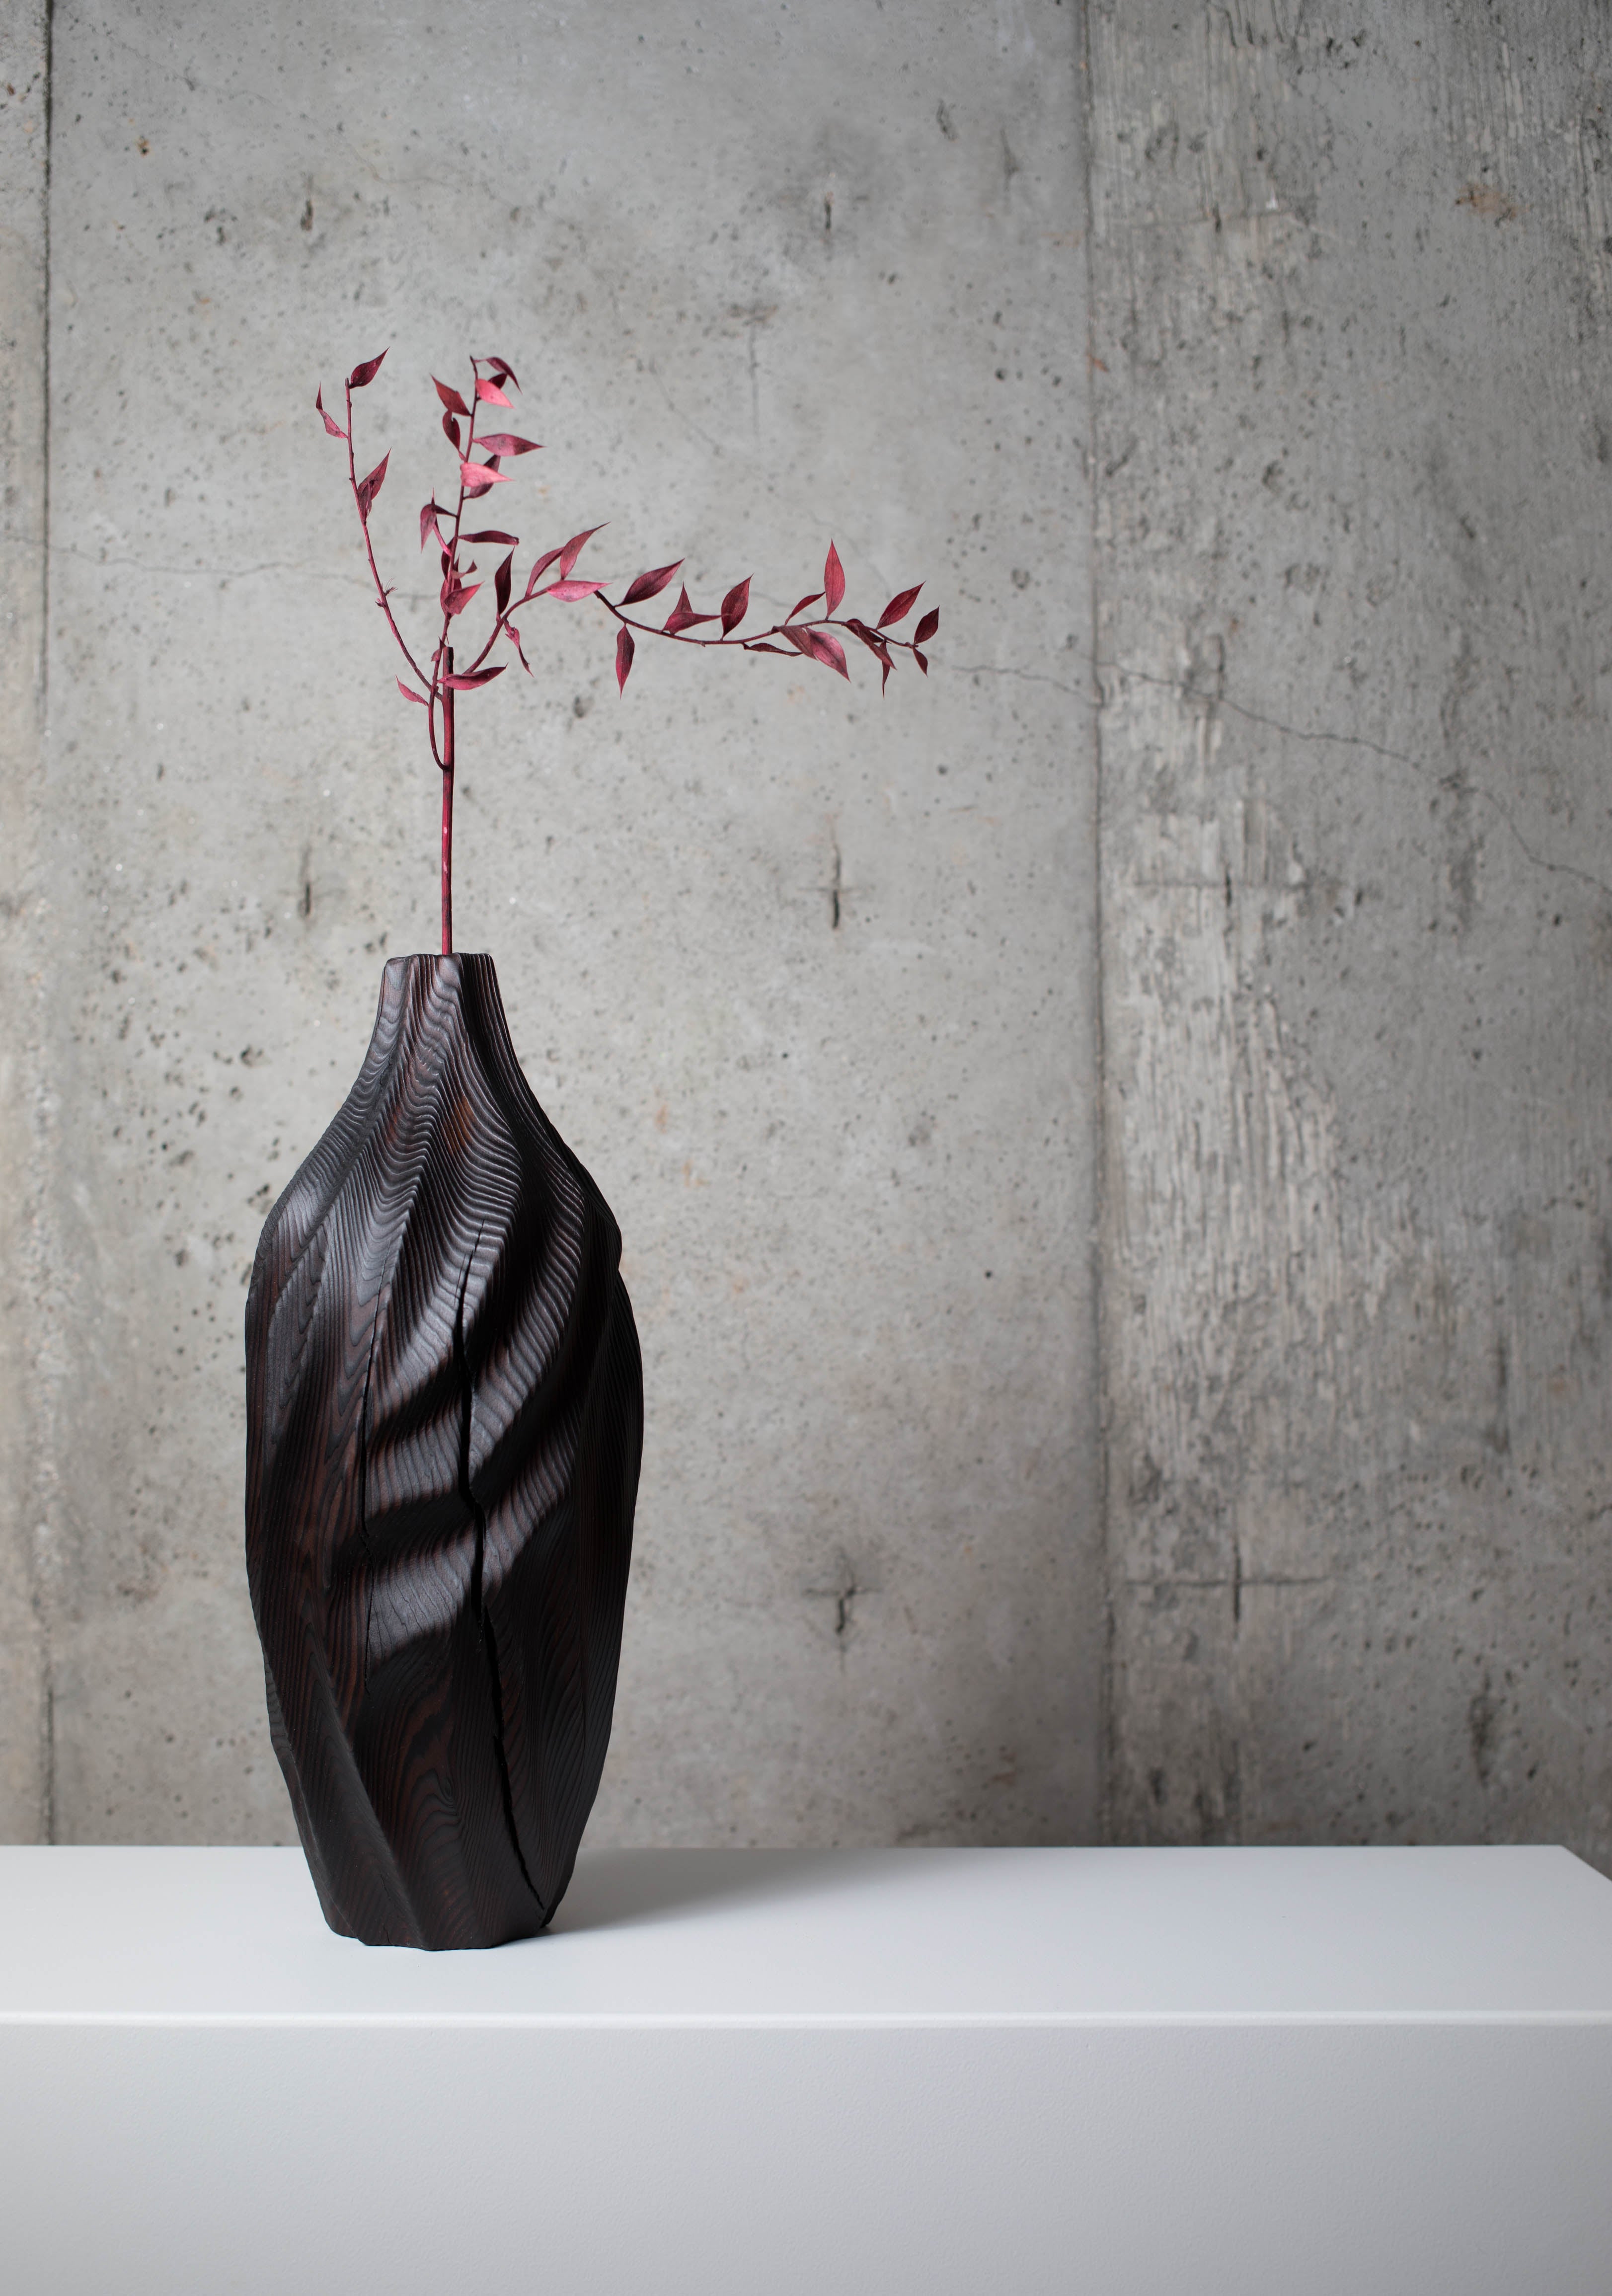 wood turned vase idea